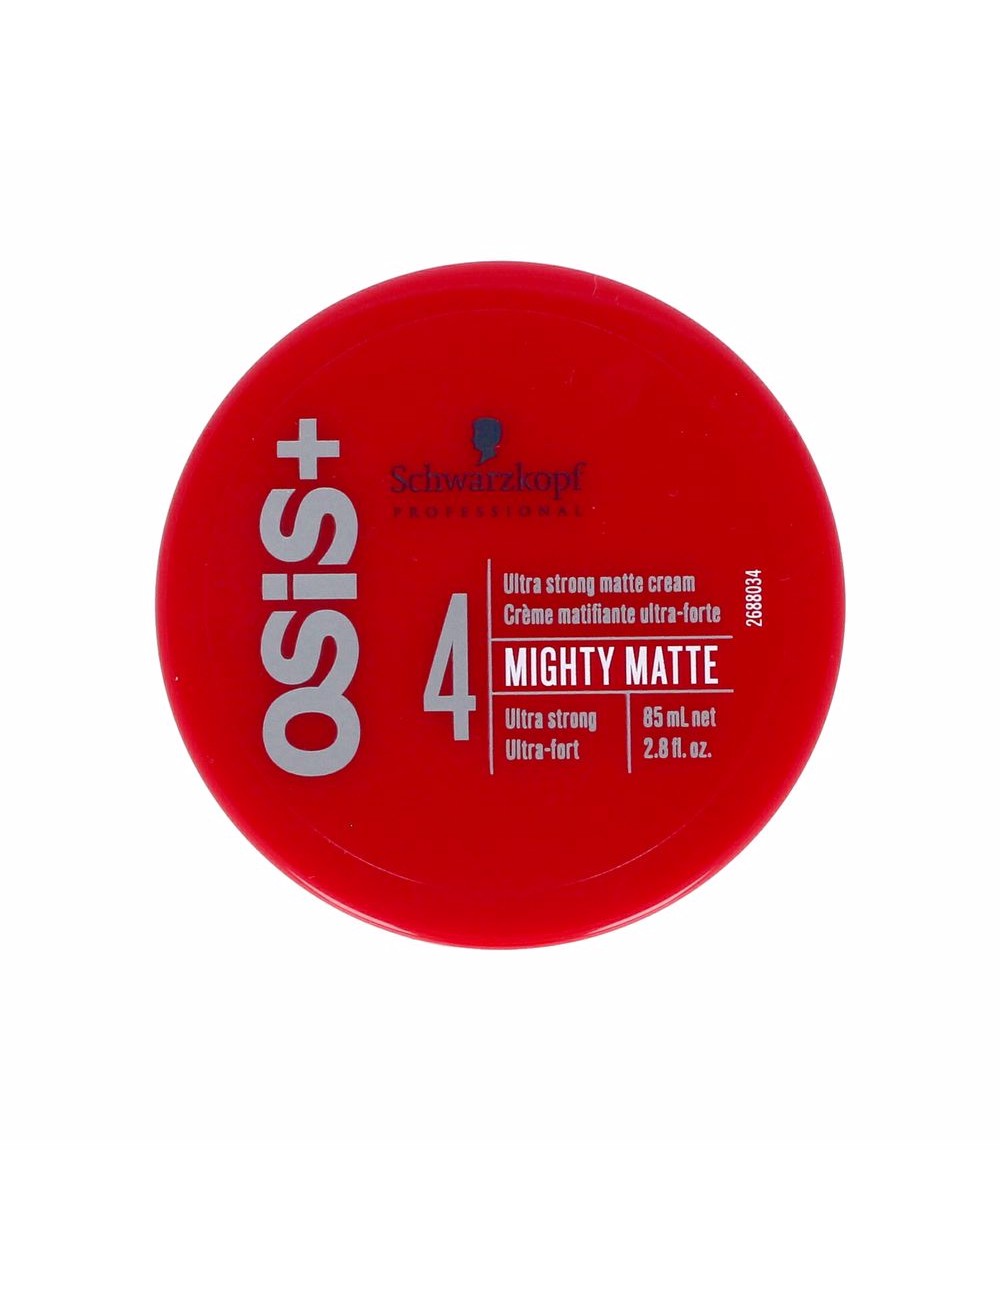 OSIS mighty matte ultra strong matte cream 85ml